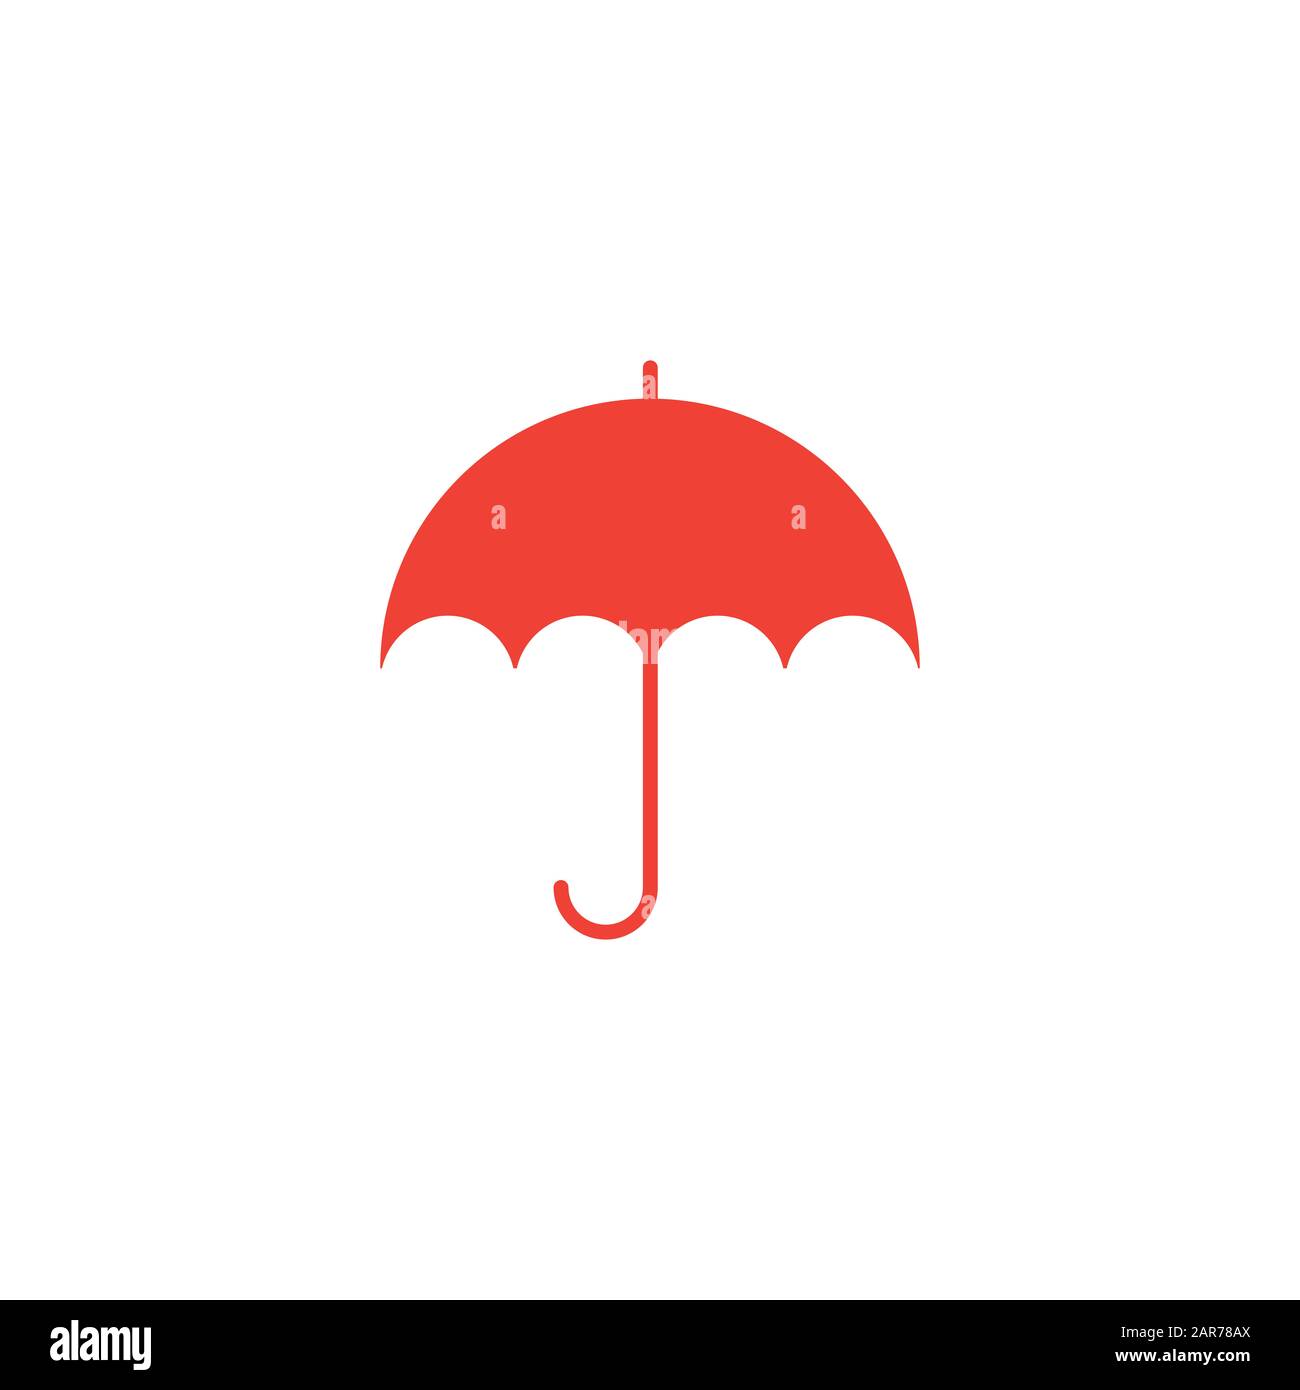 Regenschirm-Rotes Symbol Auf Weißem Hintergrund. Rote Vektor-Grafik Mit  Flacher Form Stockfotografie - Alamy